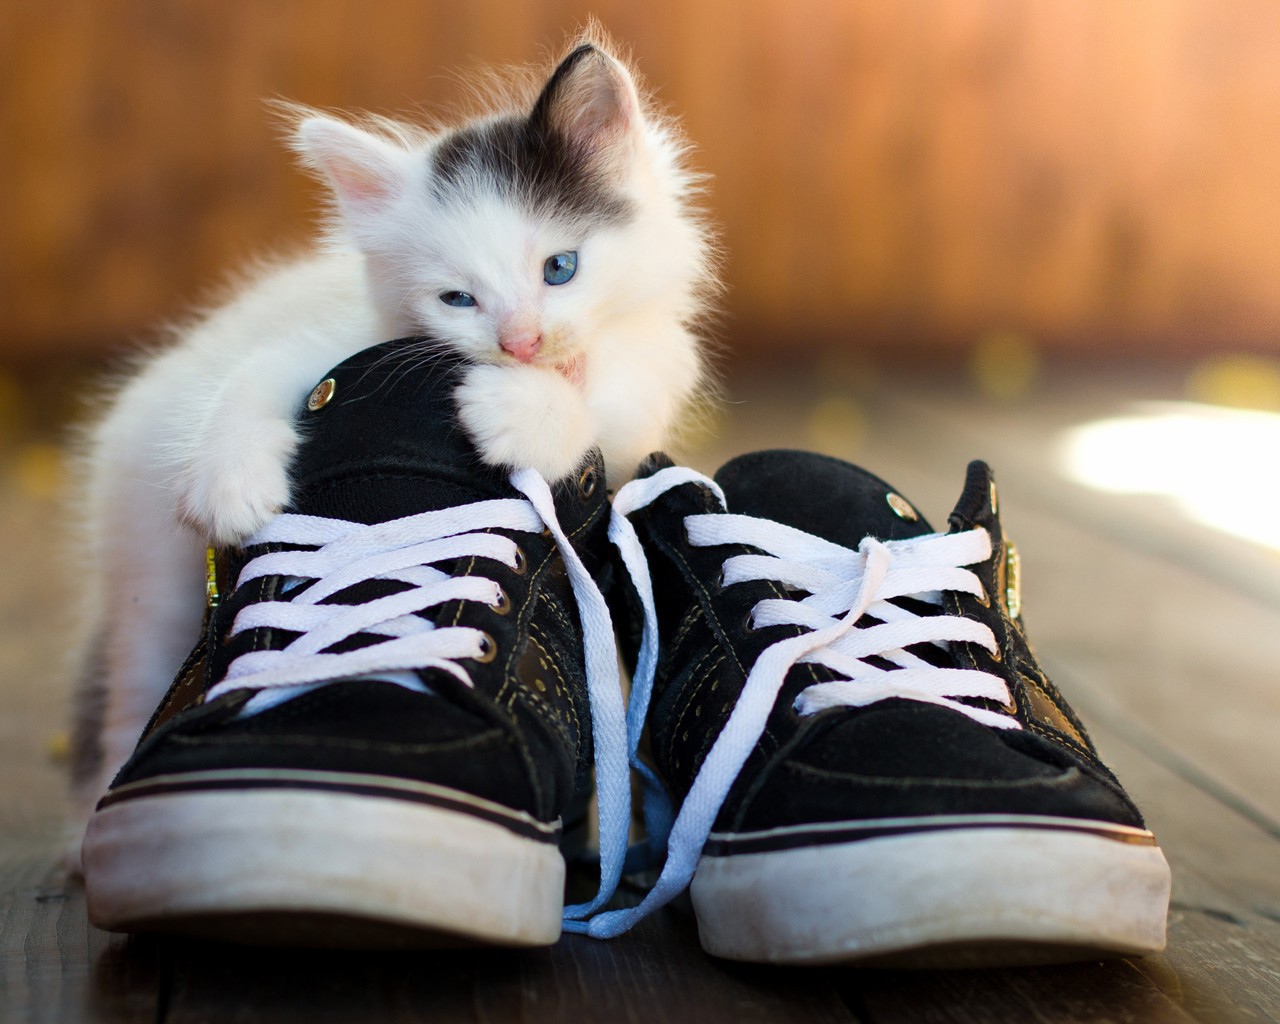 Kitten is eating sneakers